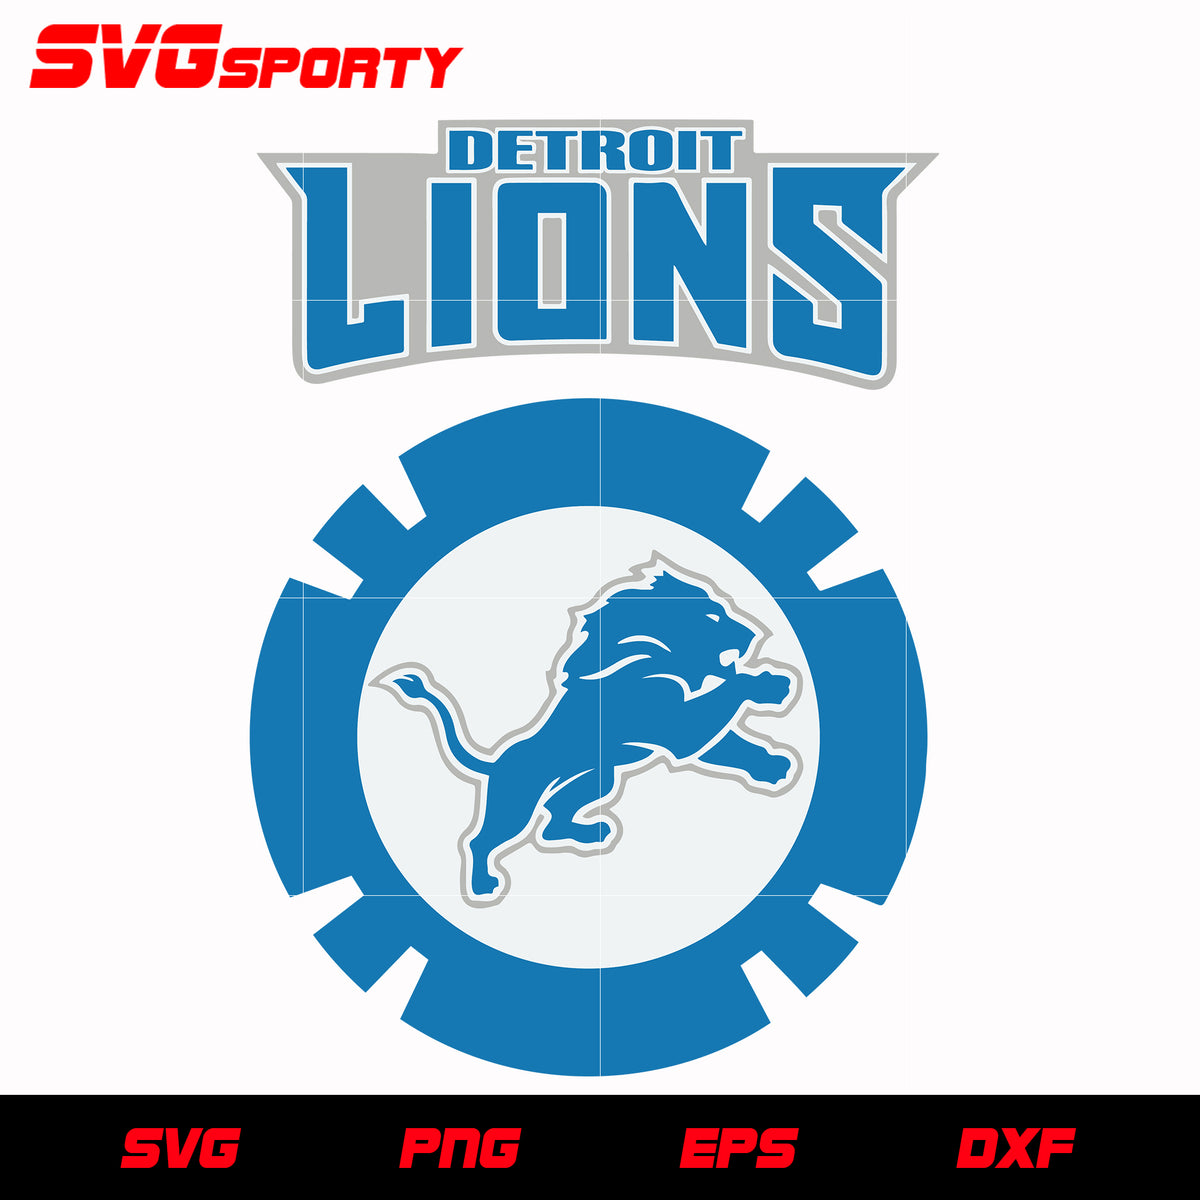 Detroit Lions SVG Files - Detroit Lions Logo SVG - Detroit Lions PNG Logo,  NFL Logo